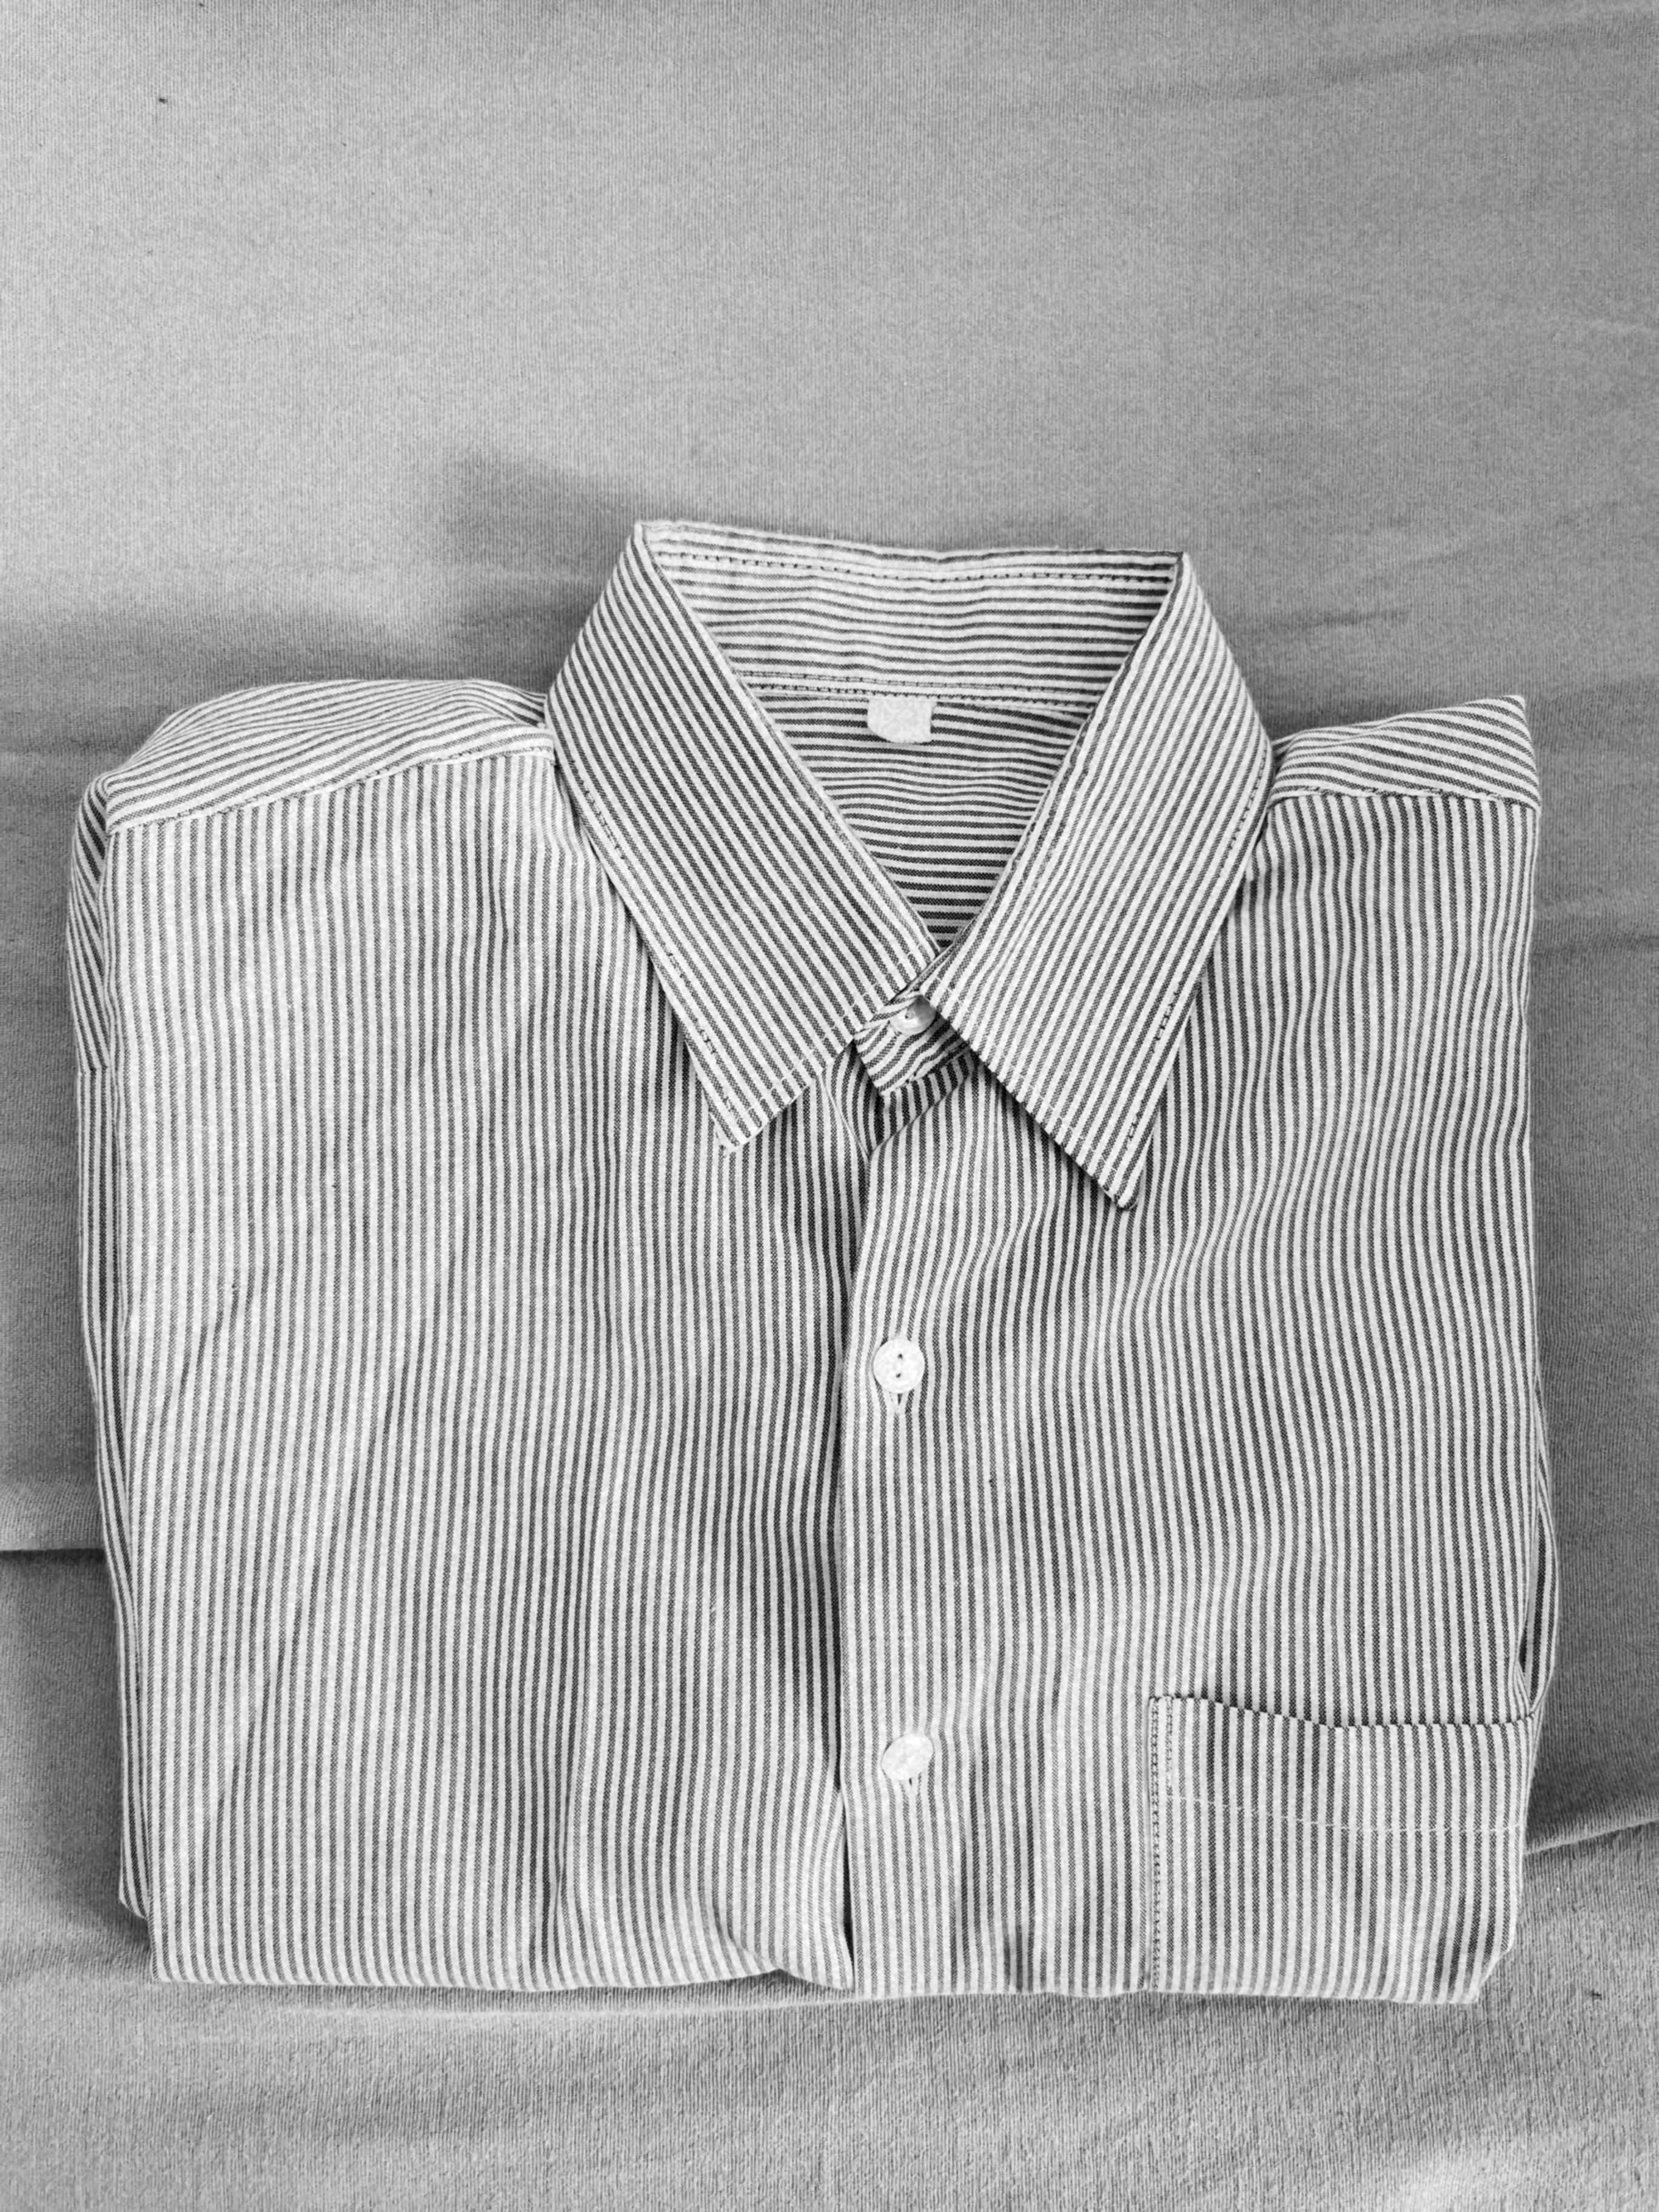 Duża paka lekko używanych koszul męskich, długi rękaw, rozm. L/176-180